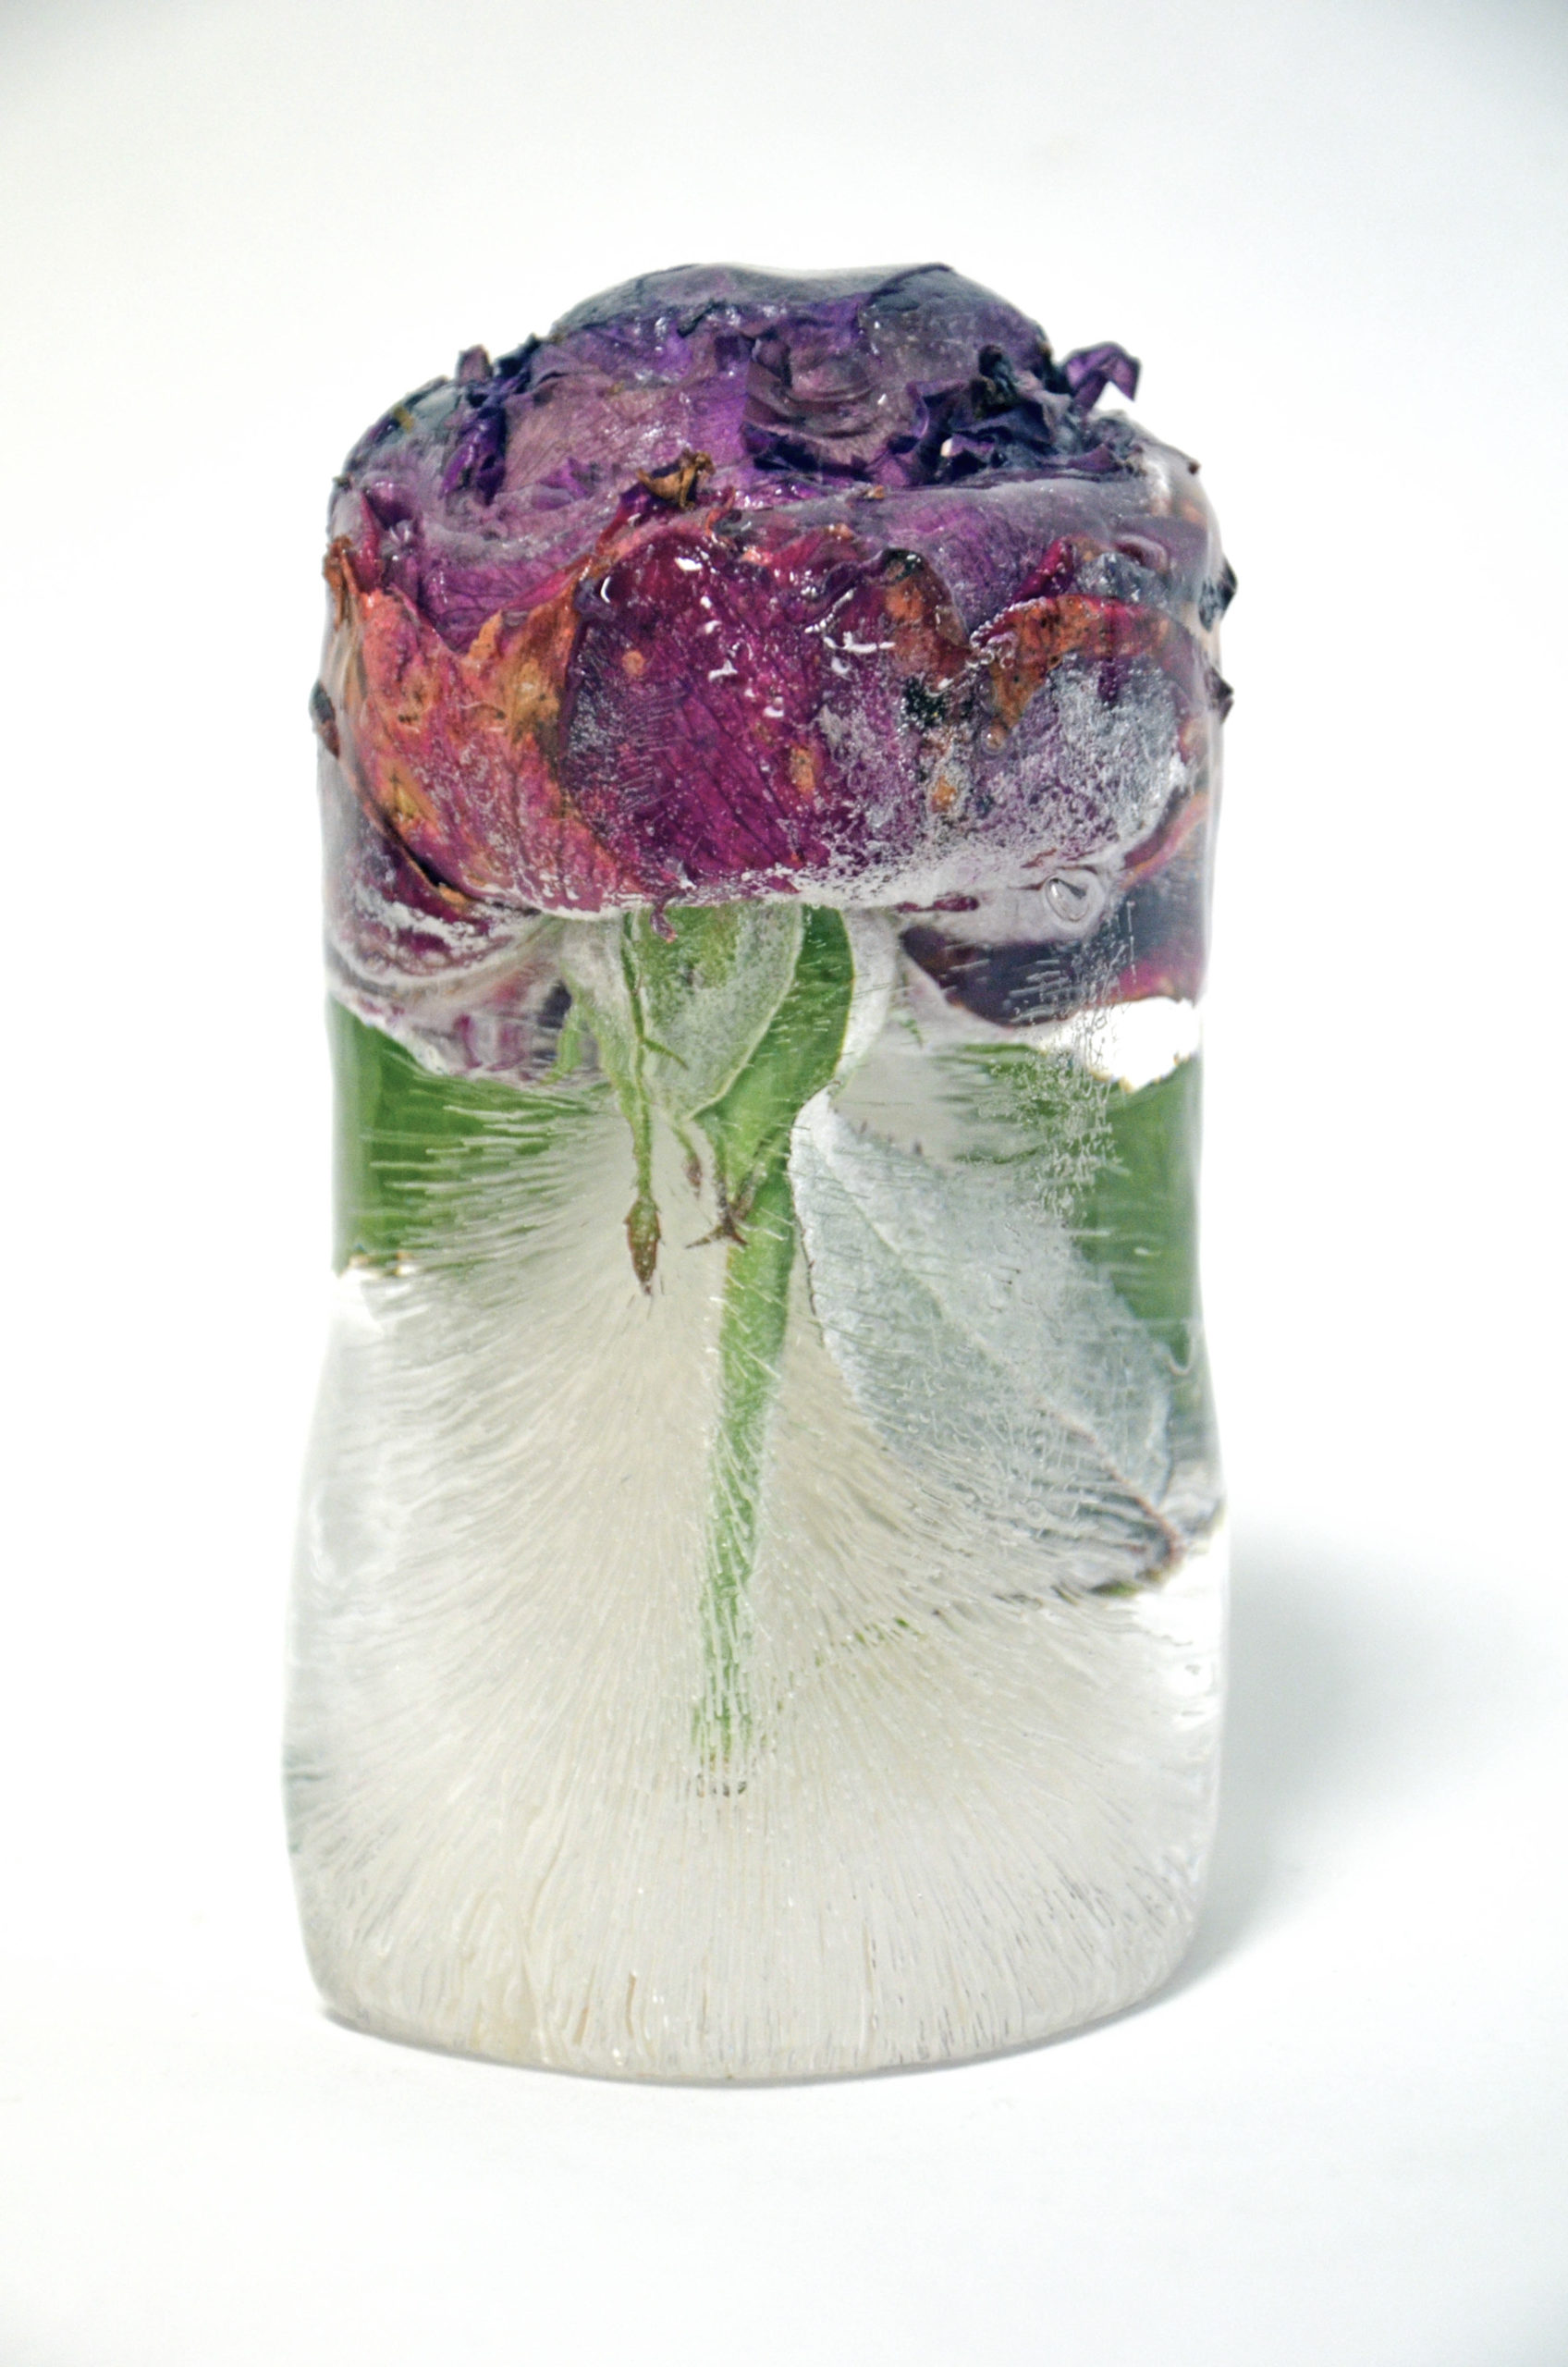 Glaçon fleuri, Semblable à une vitrine éphémère, la glace conserve la beauté de la fleur coupée.    Crucifié, le glaçon fond progressivement délivrant une coulée colorée, tel un saignement qui se dissipe à mesureque les fleurs se fanent.